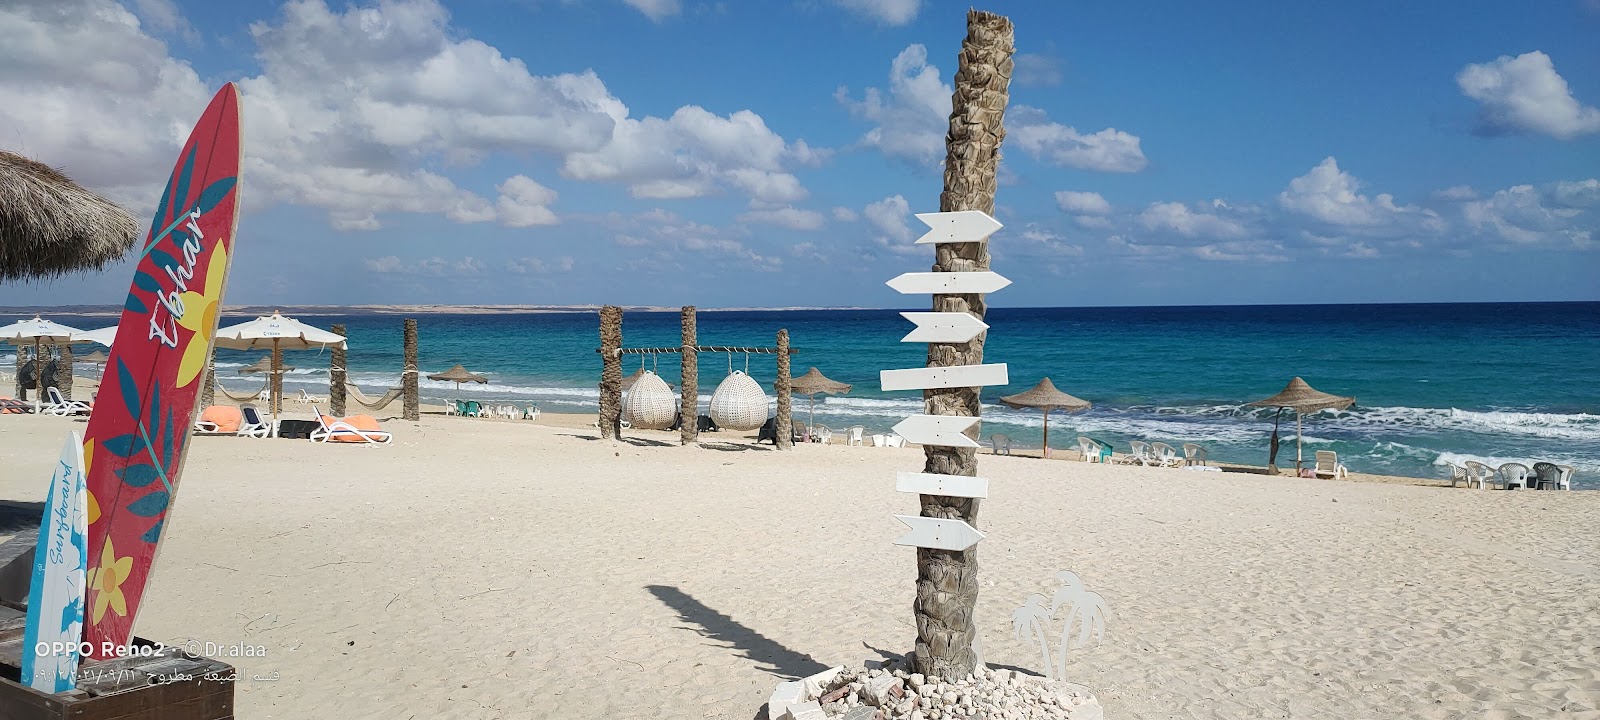 Foto de Al Rawan Resort Beach com areia brilhante superfície